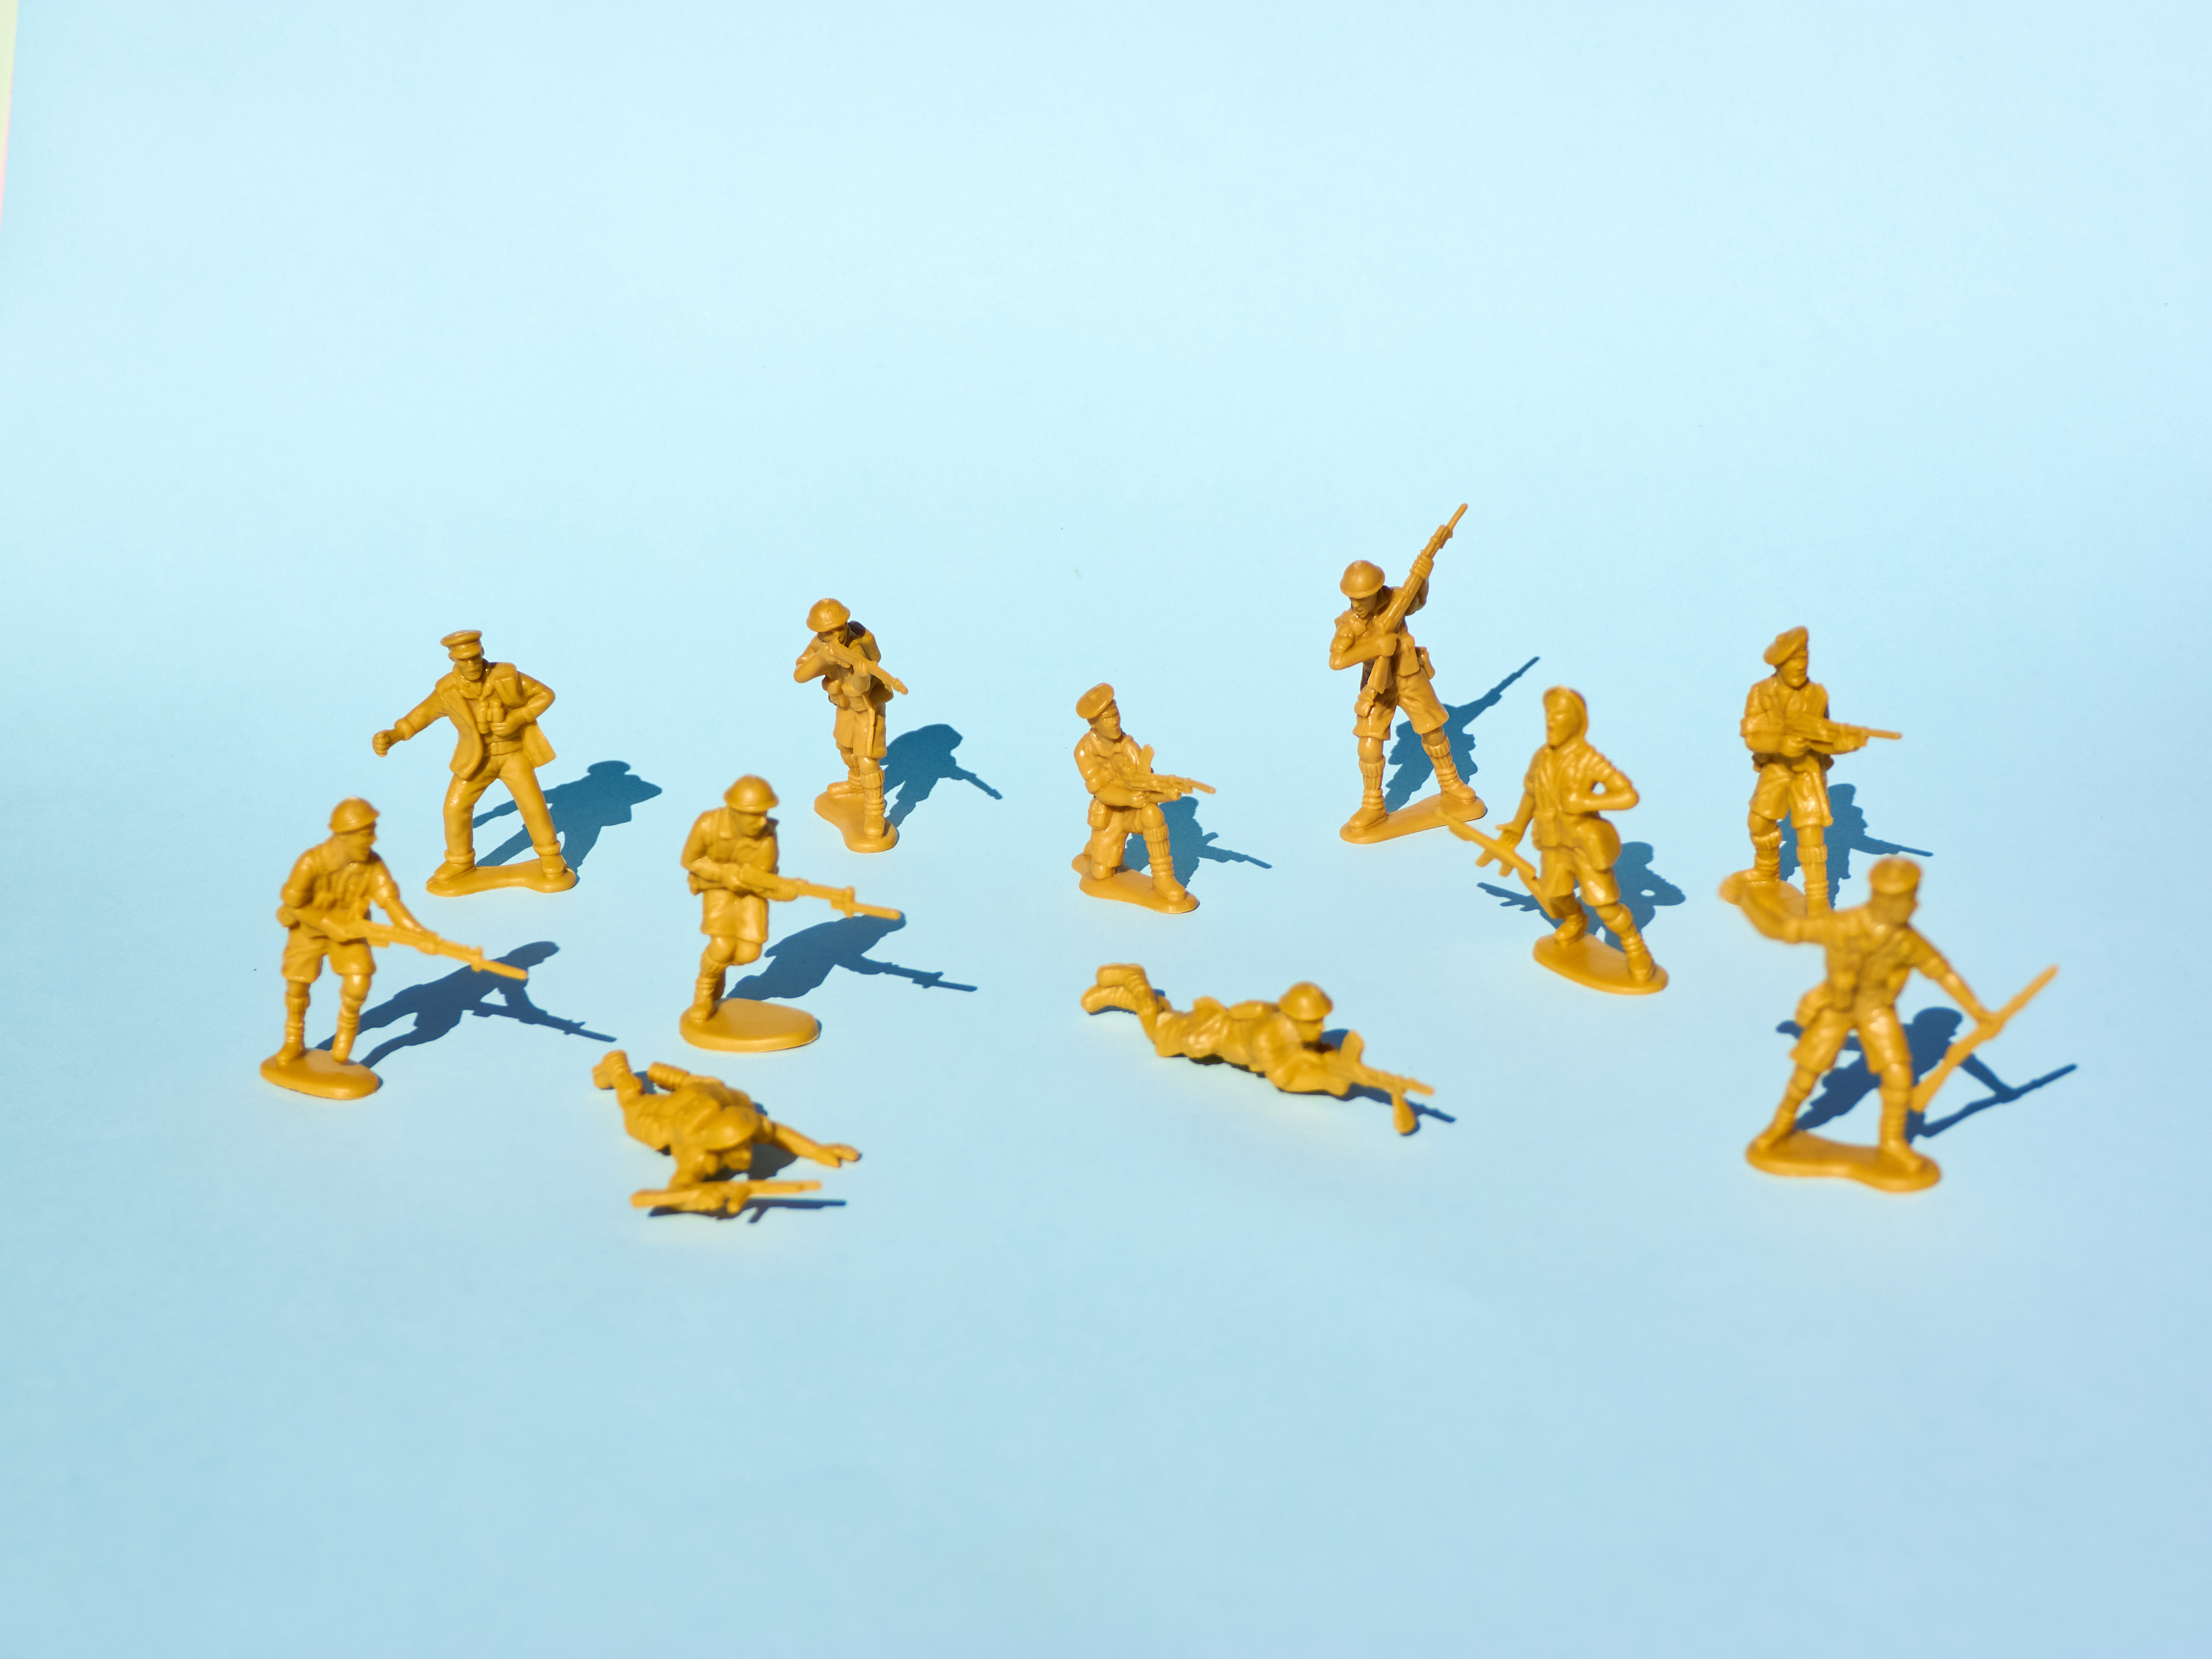 파란색 배경에서 서로 총을 겨누고 있는 노란색 플라스틱 장난감 병사들의 이미지.